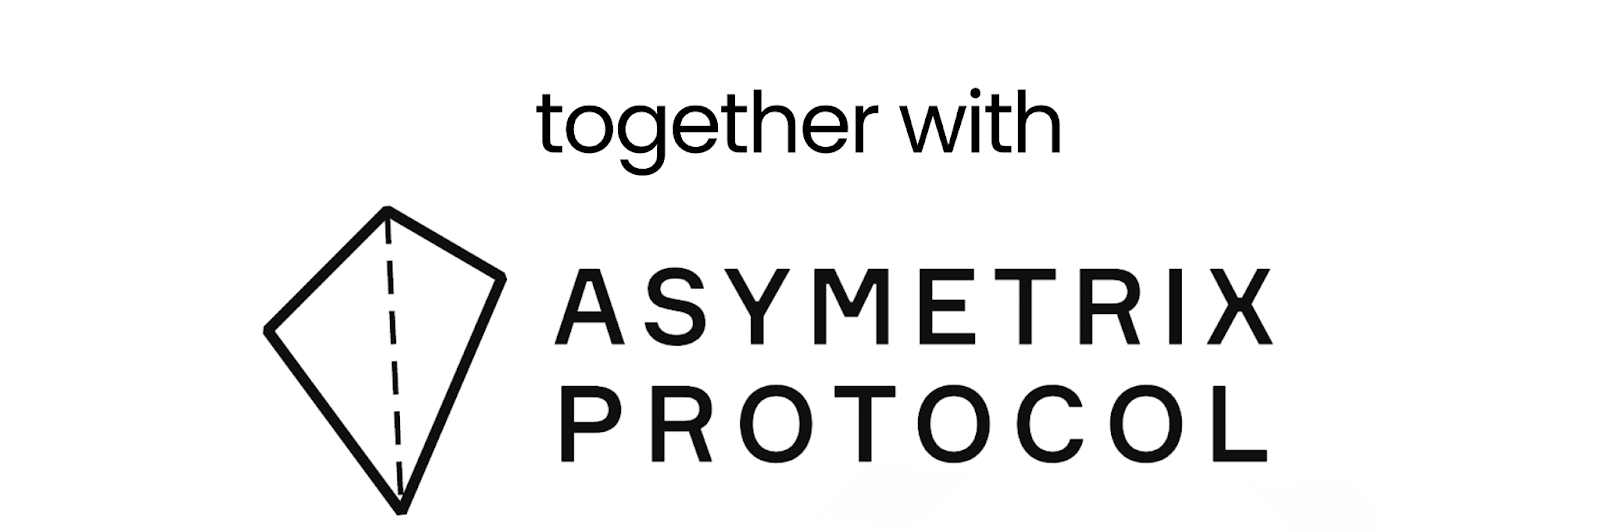 asymmetric protocol